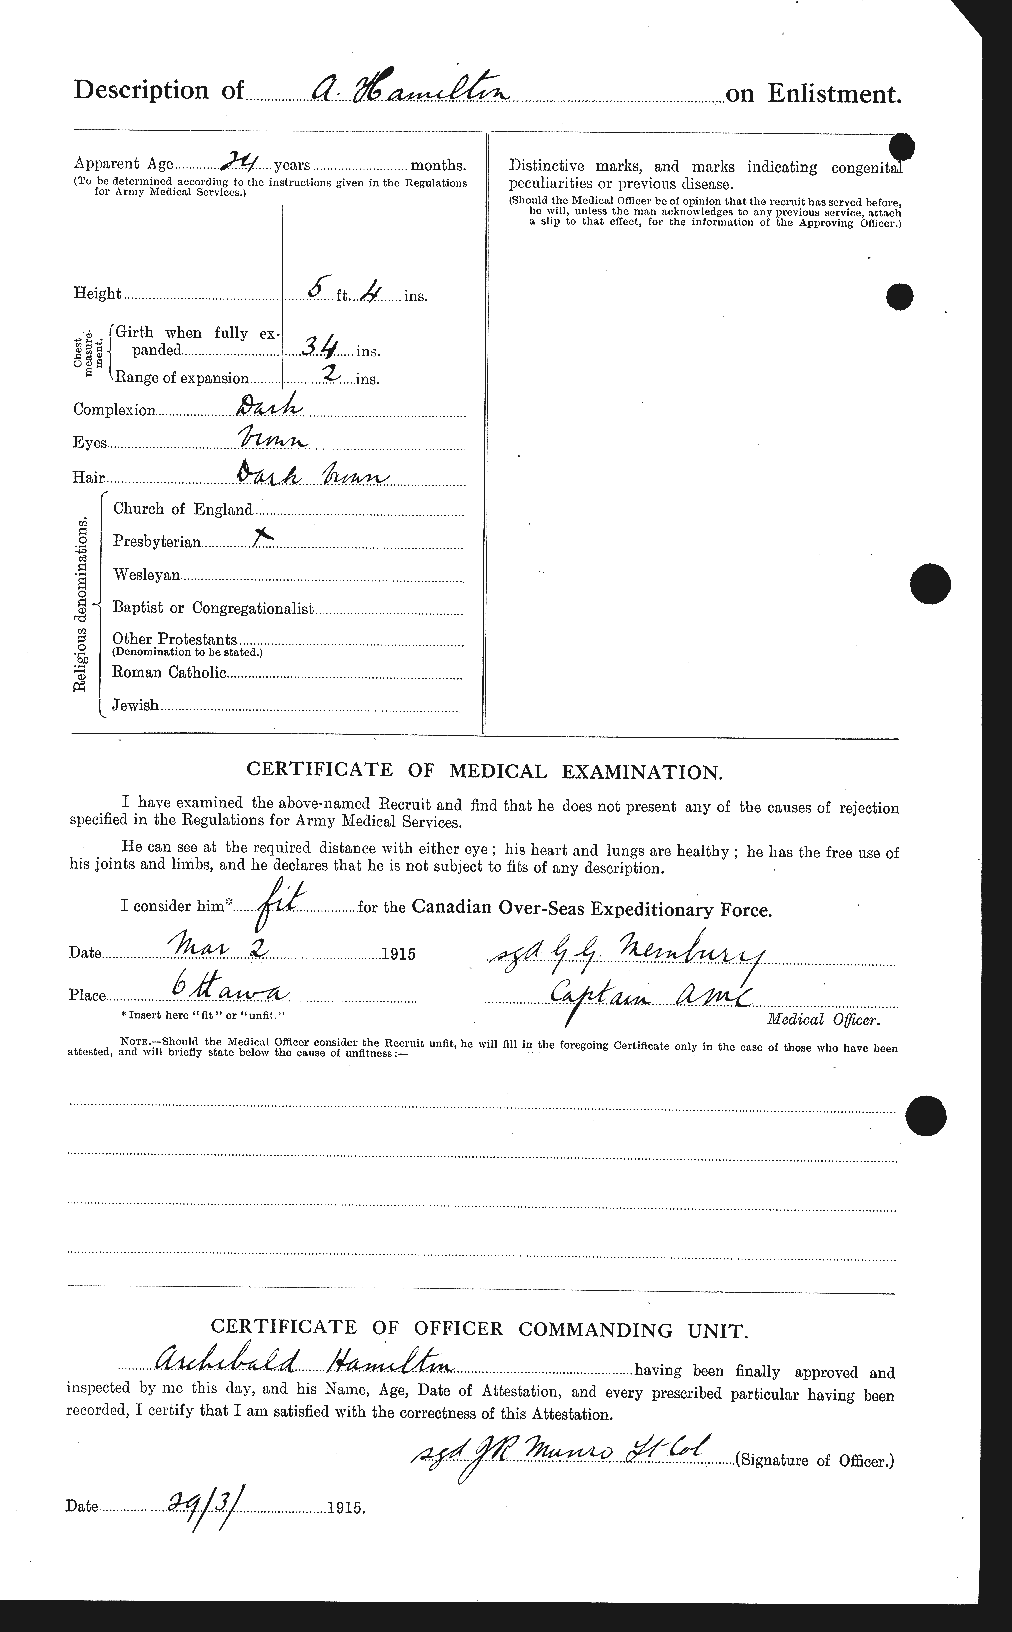 Dossiers du Personnel de la Première Guerre mondiale - CEC 375243b